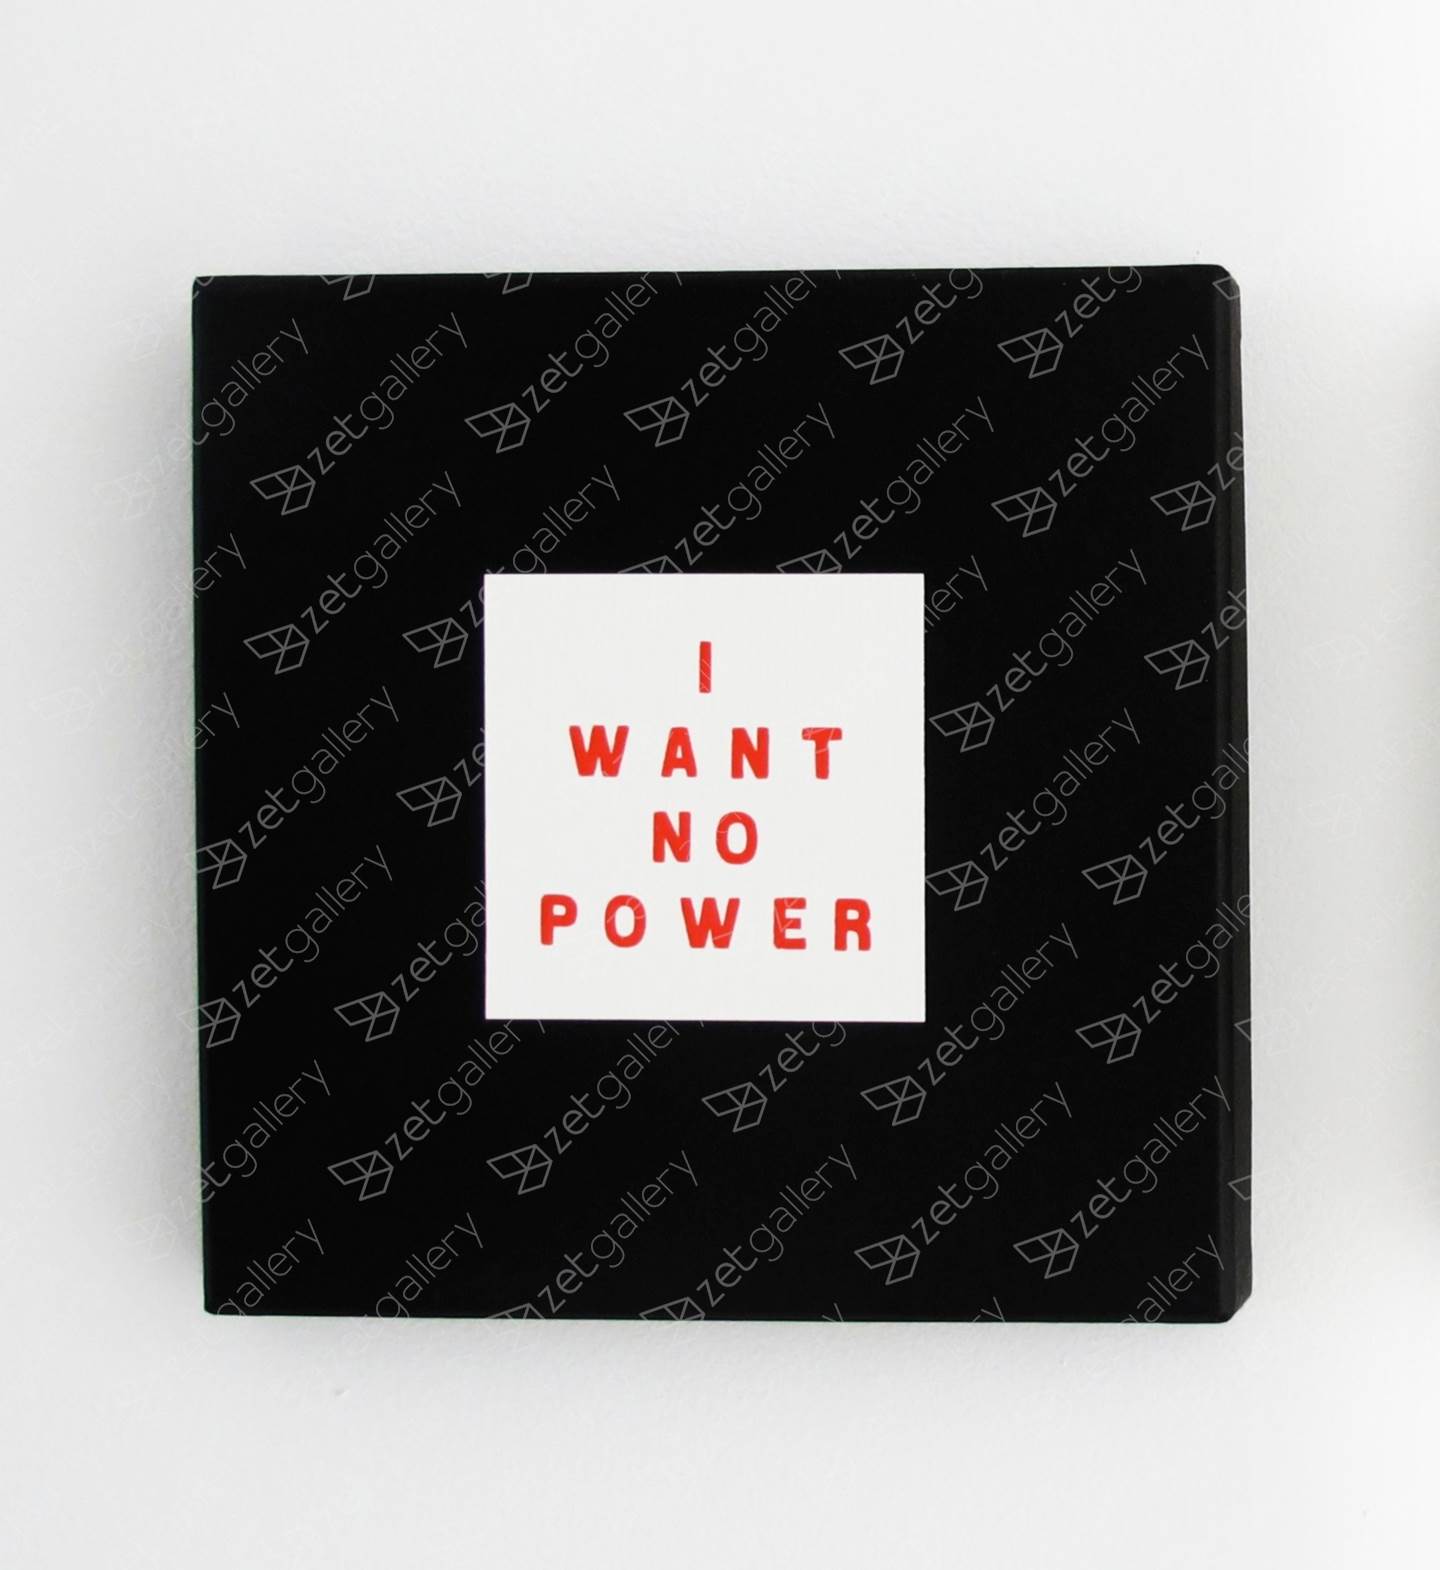 I want no power #2, original Body Digital Photography by Andrea Inocêncio